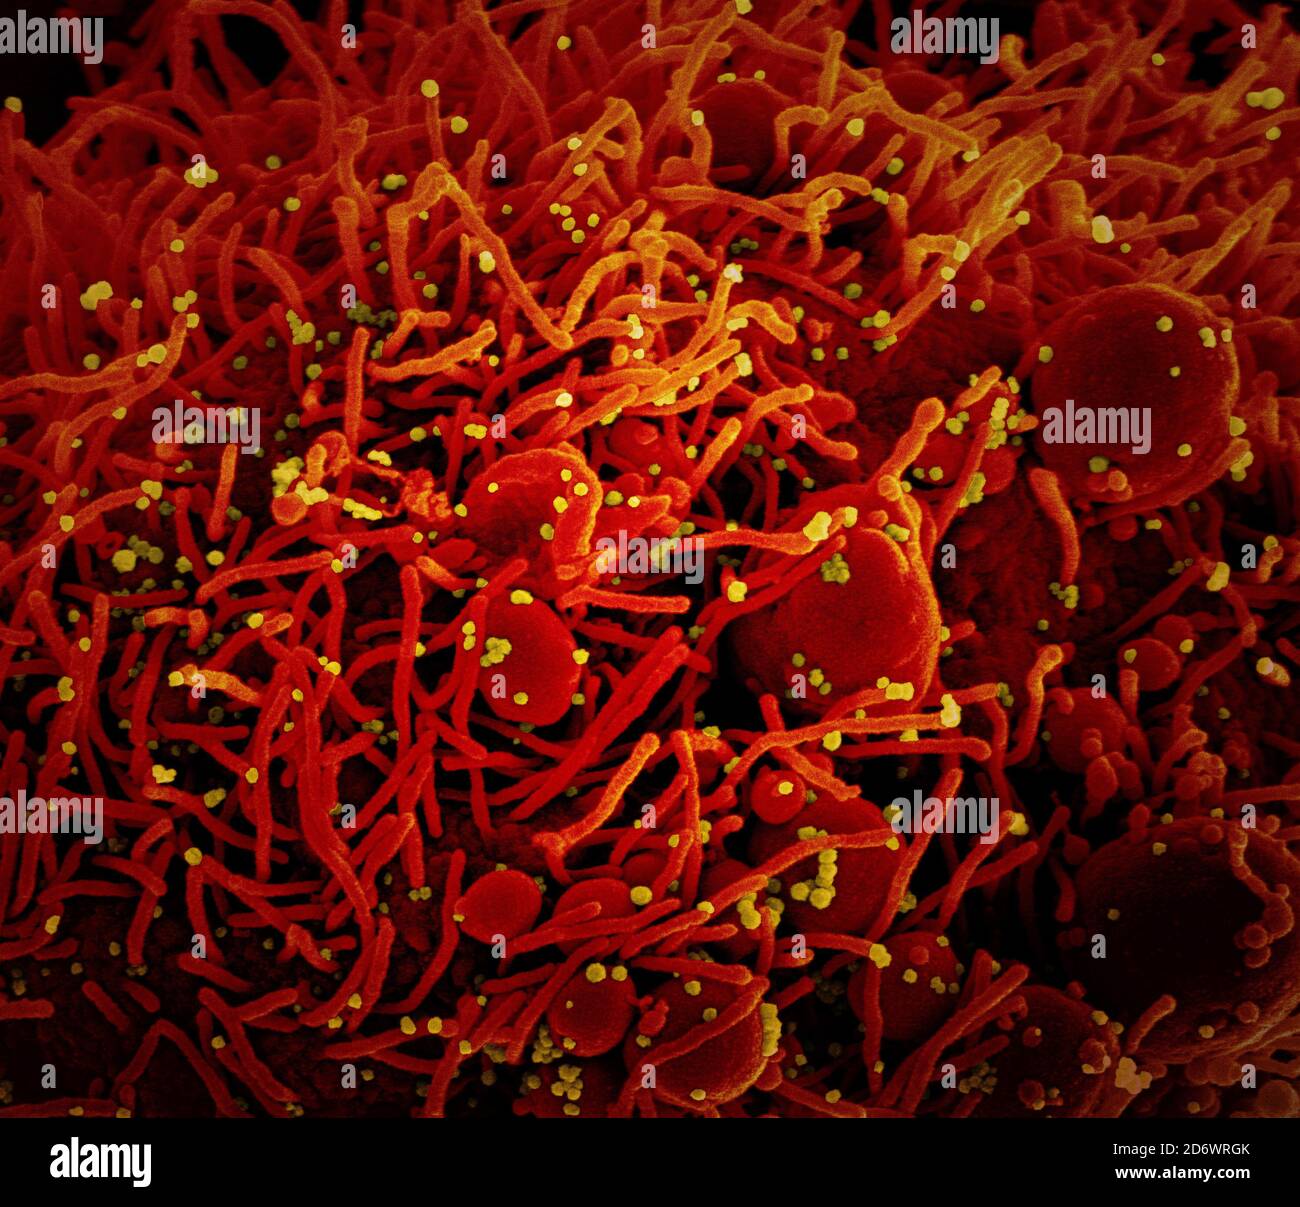 Micrografía electrónica de exploración coloreada de una célula apoptótica (roja) infectada con partículas del virus SARS-COV-2 (amarilla), aislada de una muestra de paciente. YO Foto de stock